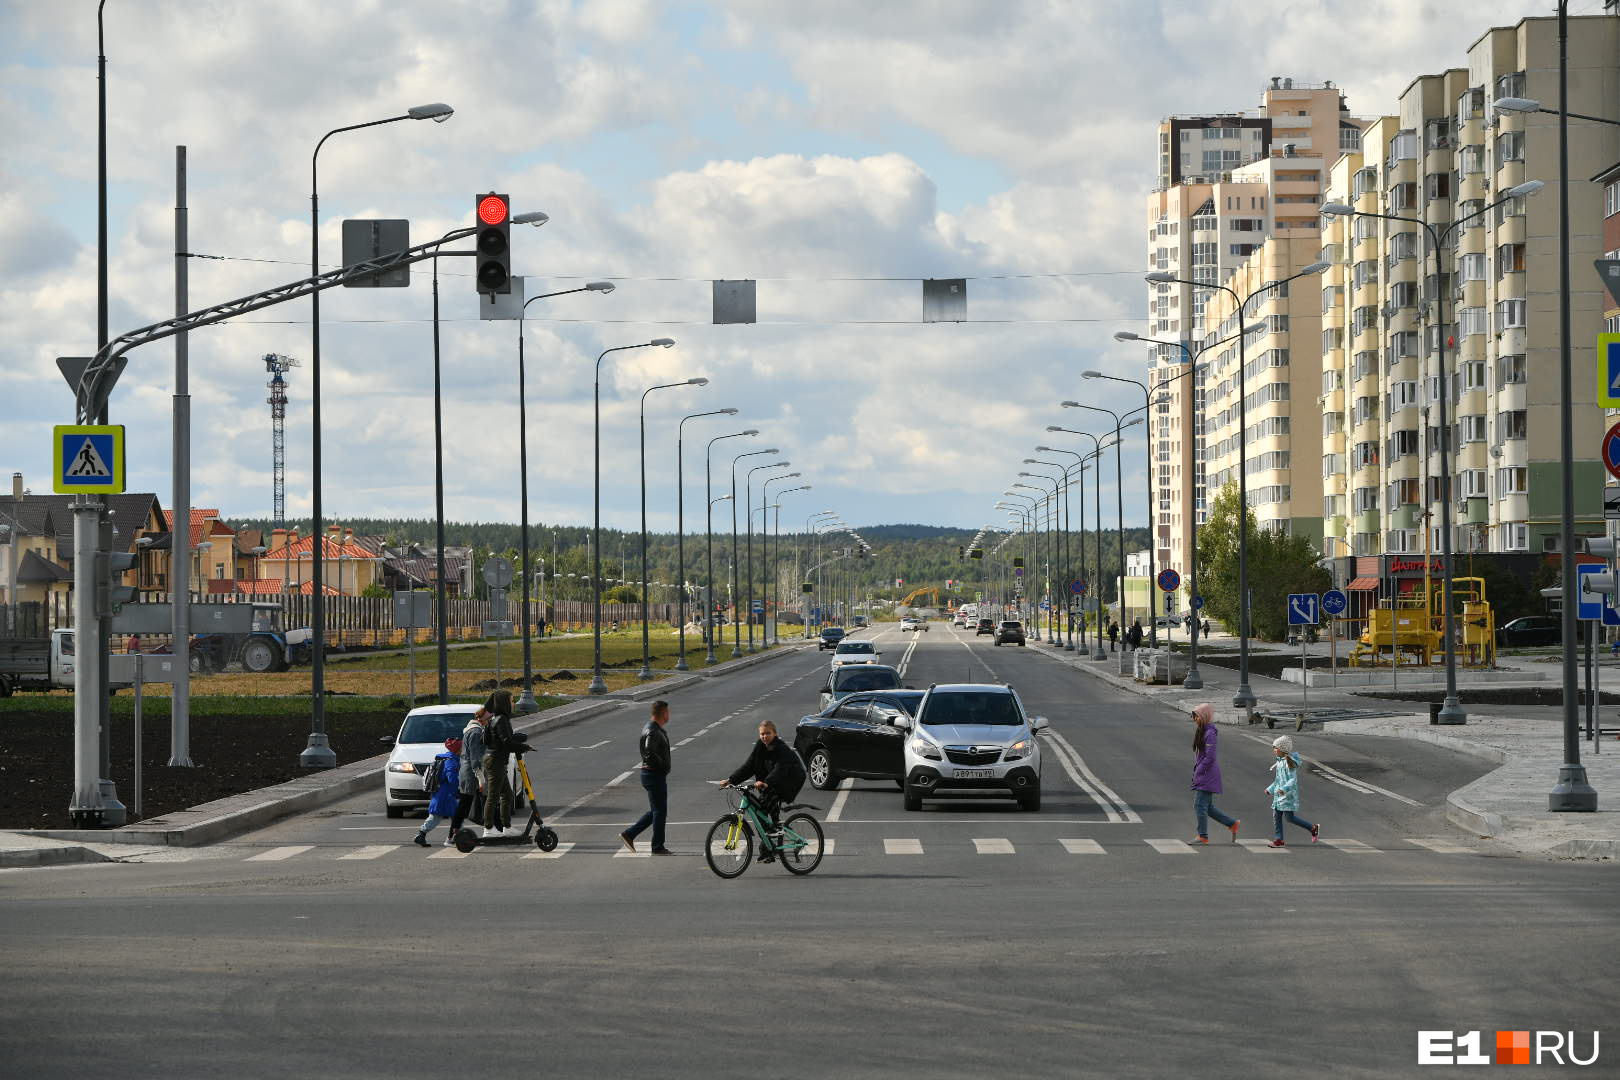 Отрезок от Краснолесья до проспекта Сахарова начали ремонтировать в 2020 году